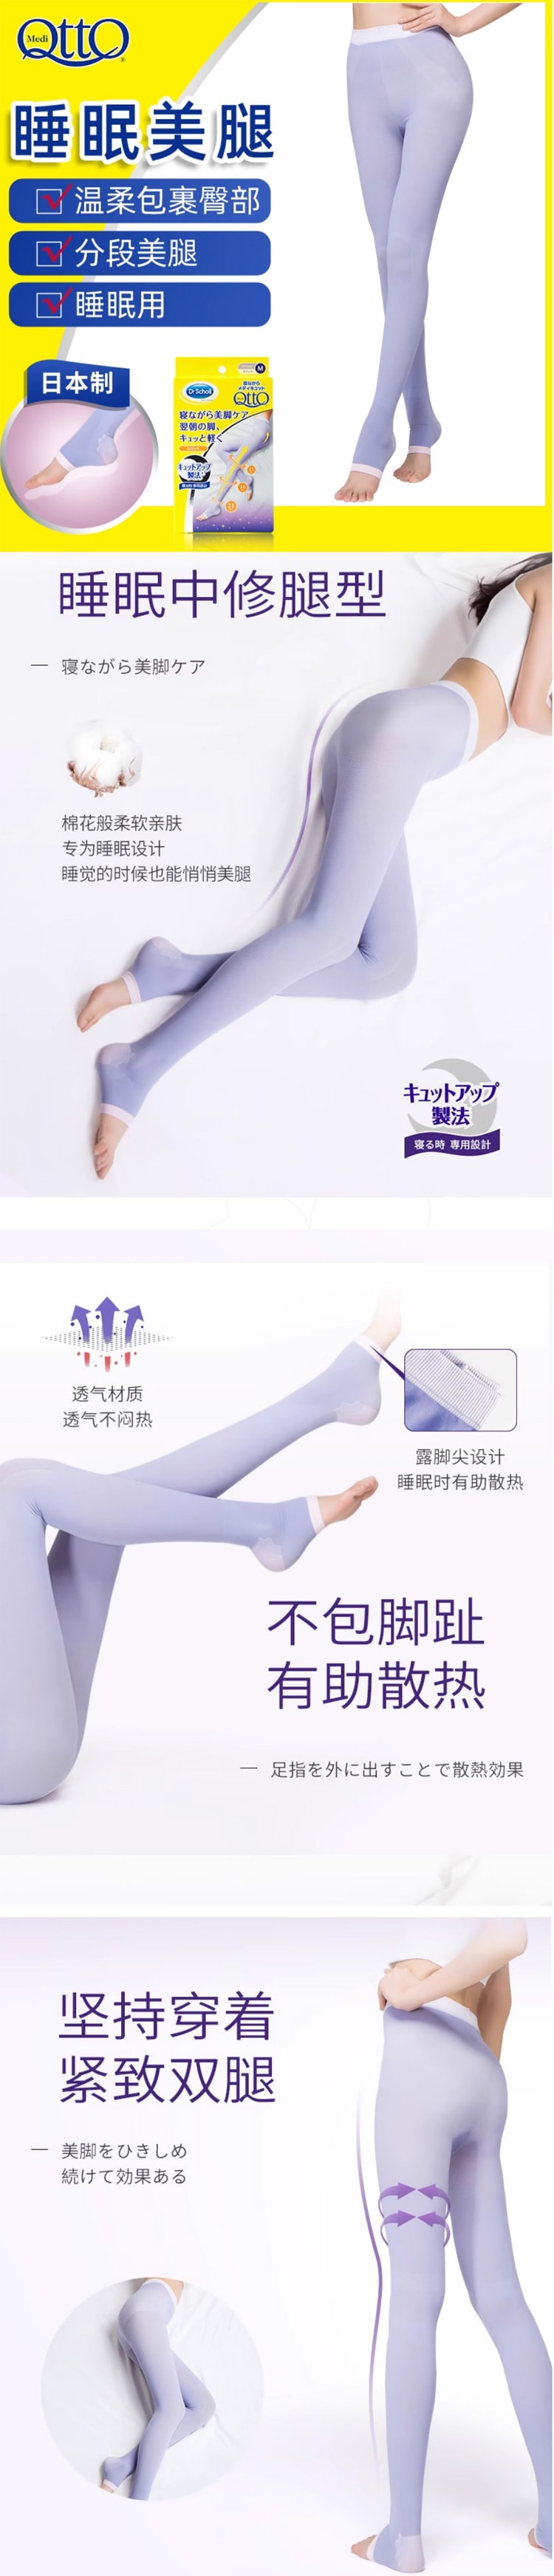 【日本直效郵件】DR.SCHOLL 爽健 QTTO 睡眠專用機能美腿襪提臀褲襪型 M碼